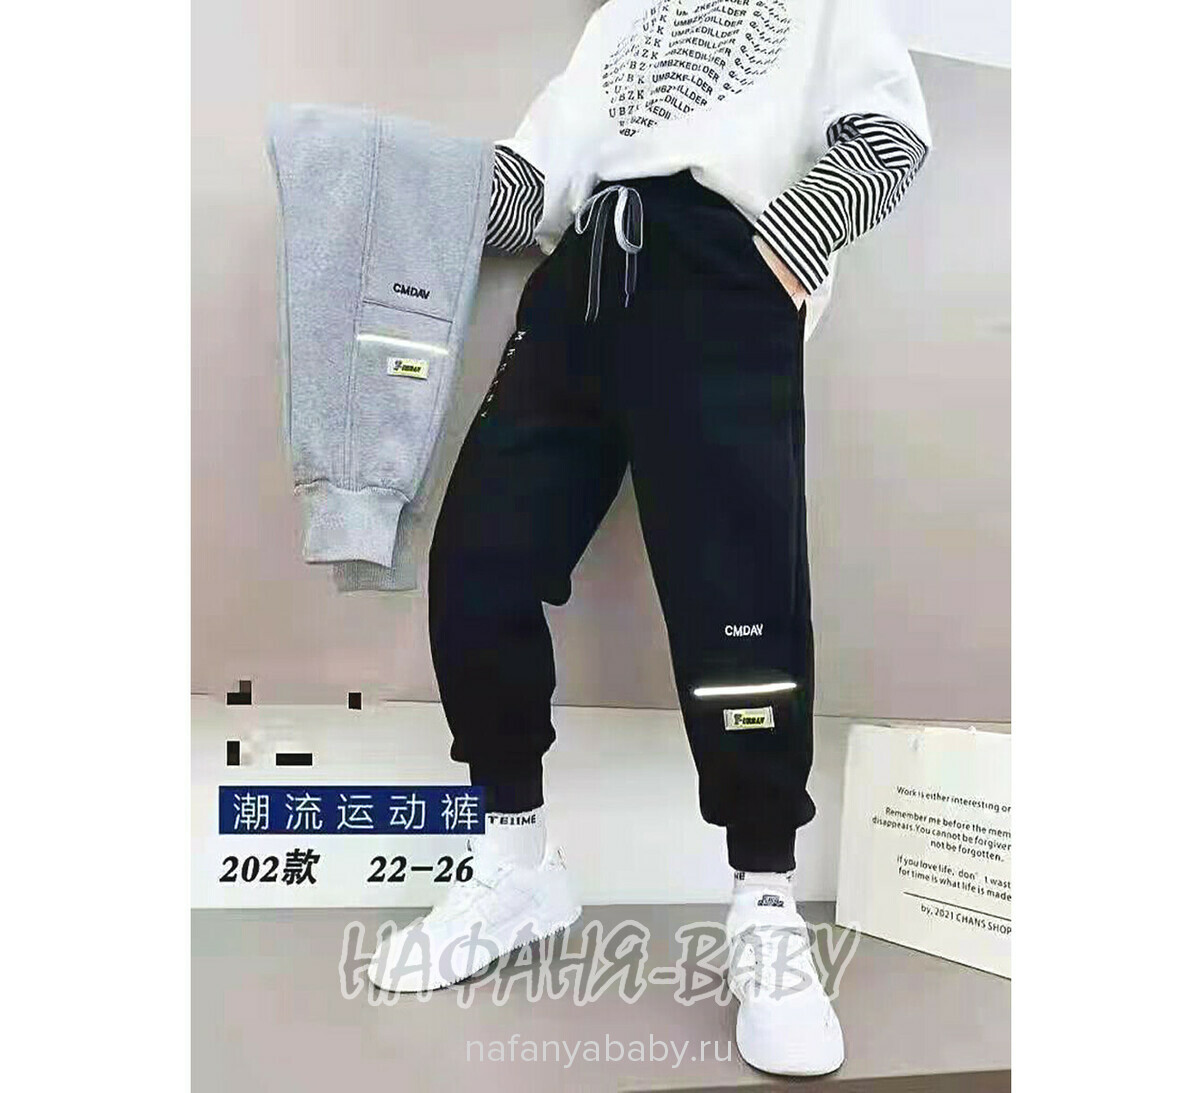 Зимние брюки на флисе XING, купить в интернет магазине Нафаня. арт: 202.